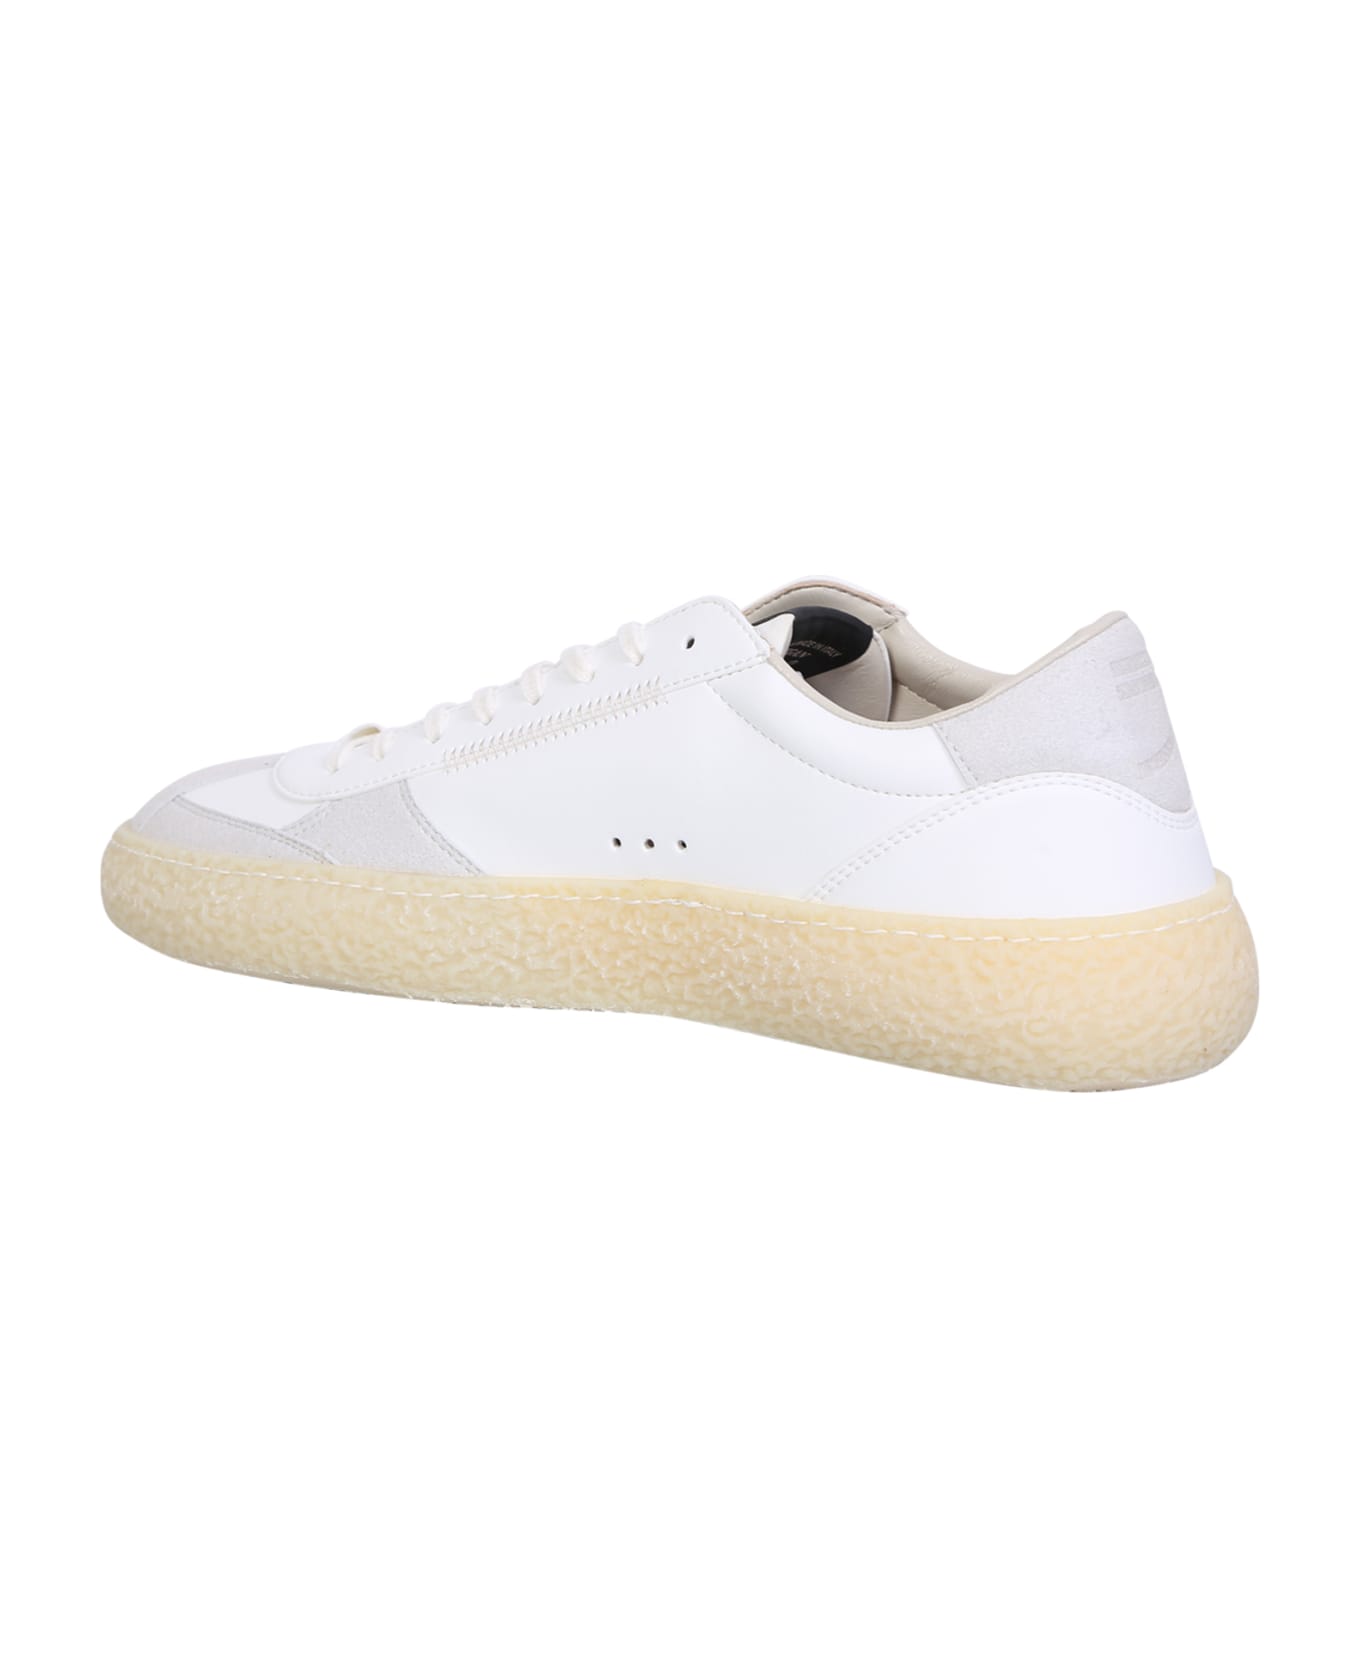 Puraai Classic Sneakers - White